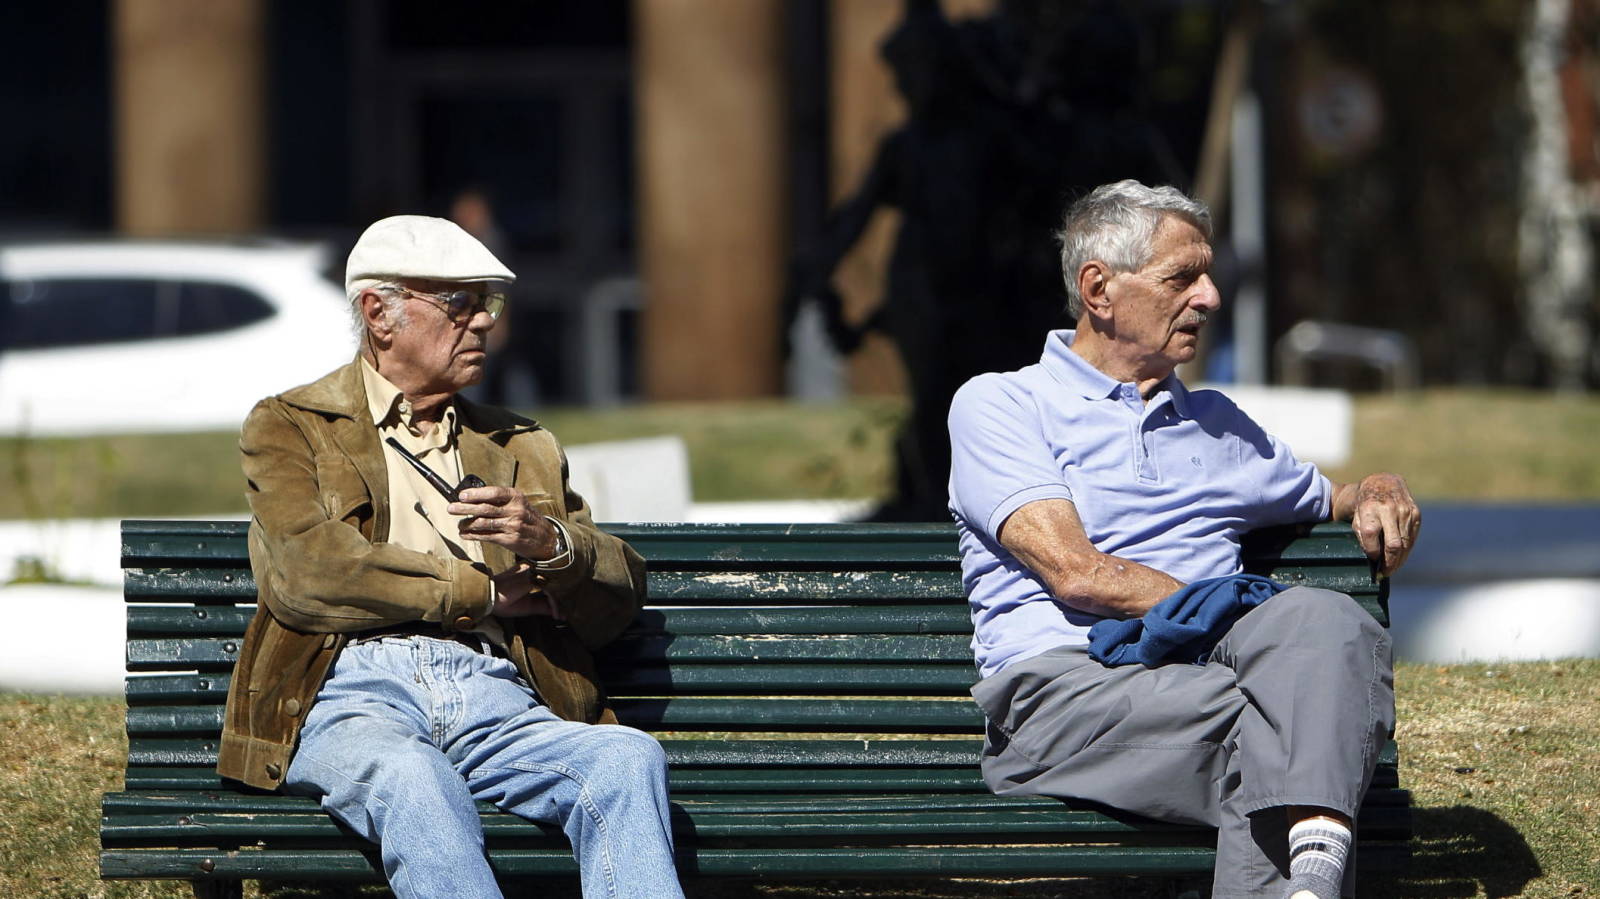 España es uno de los países con mayor esperanza de vida en Europa / Público